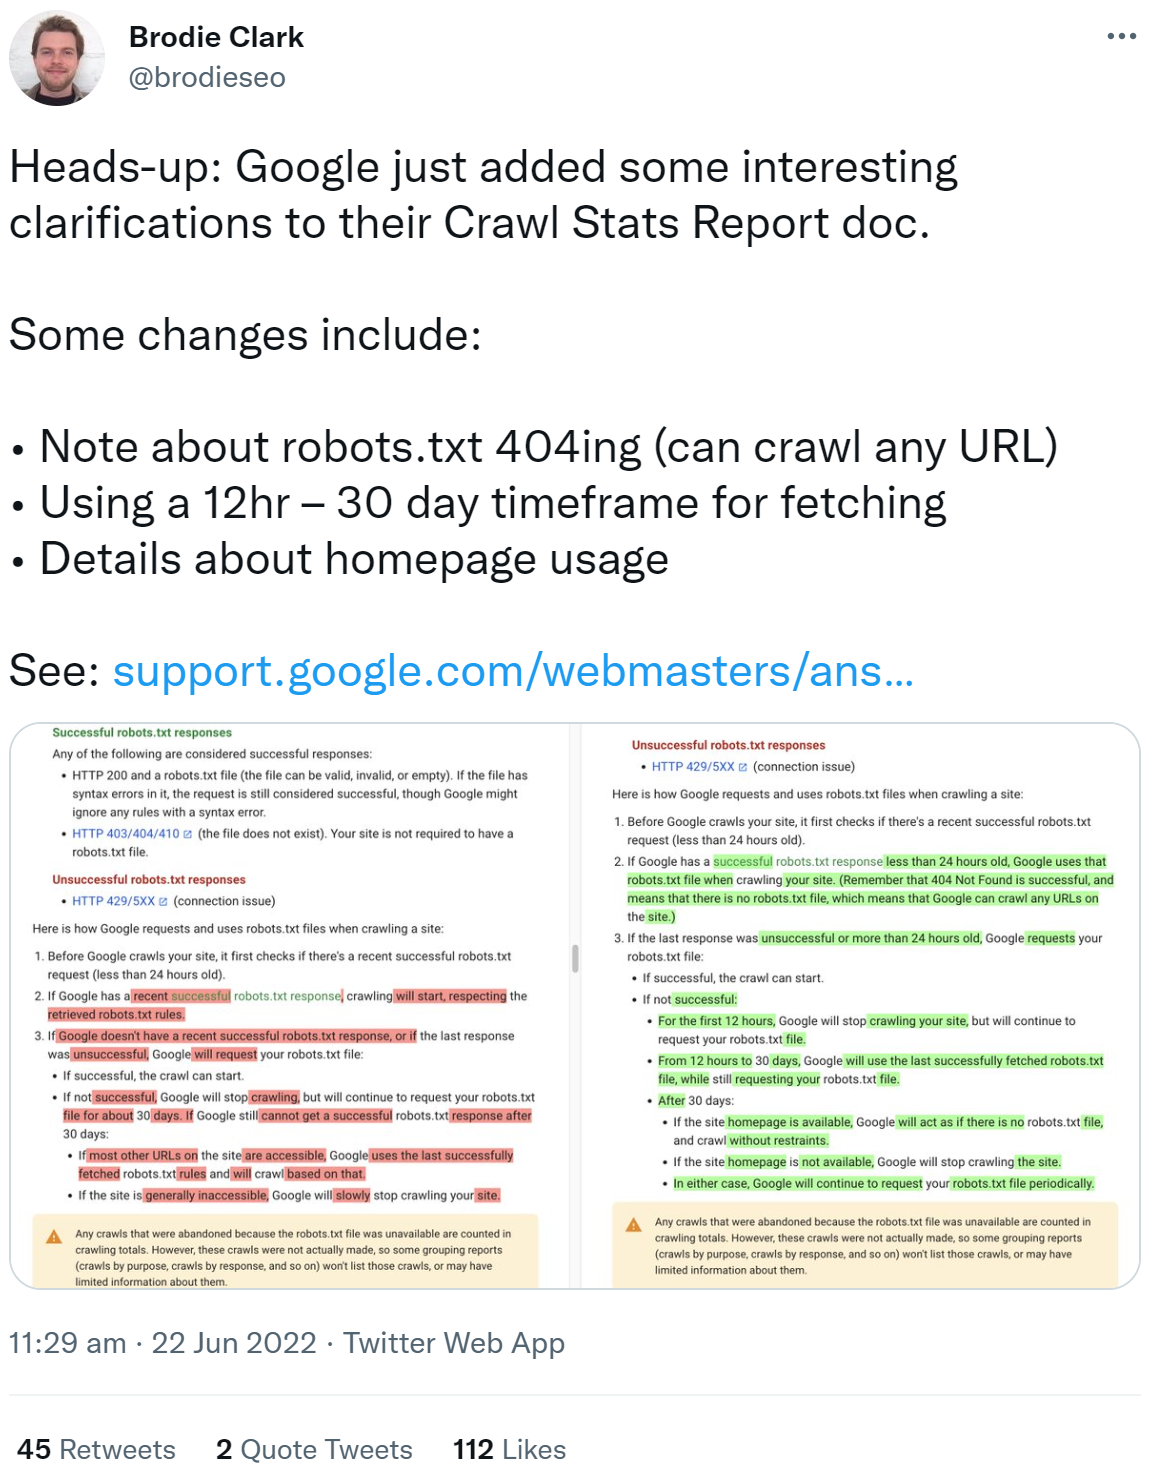 Brodie Clark auf Twitter: Änderungen an der Dokumentation zum Crawl-Statusreport in der Google Search Console